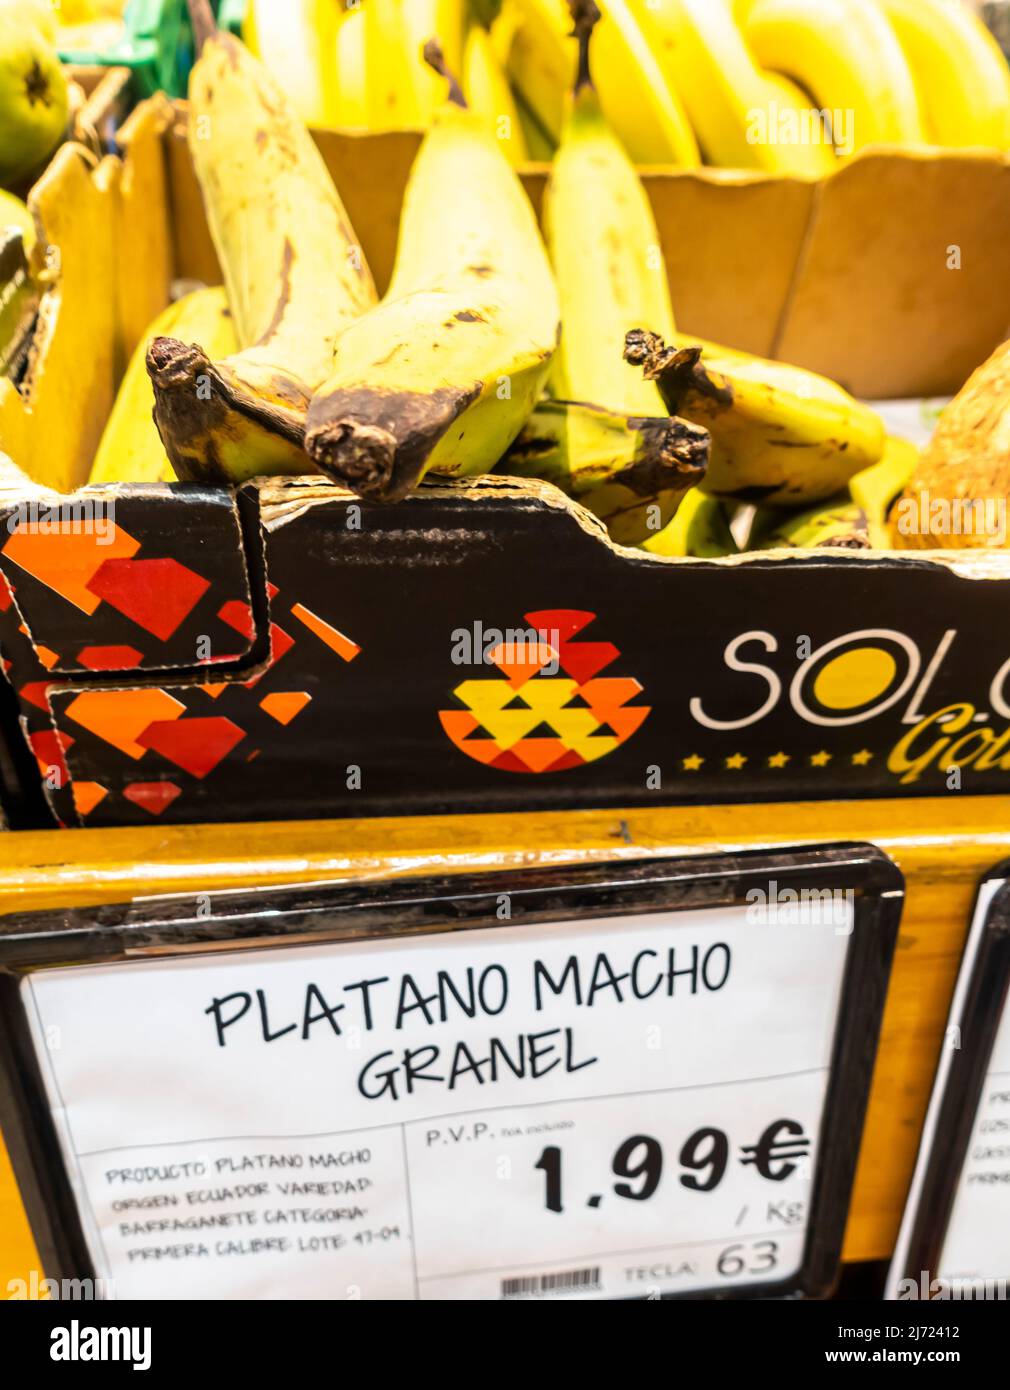 Plátano macho granel Bananas con precio TAG stall a la venta en el supermercado MAS Sevilla Foto de stock